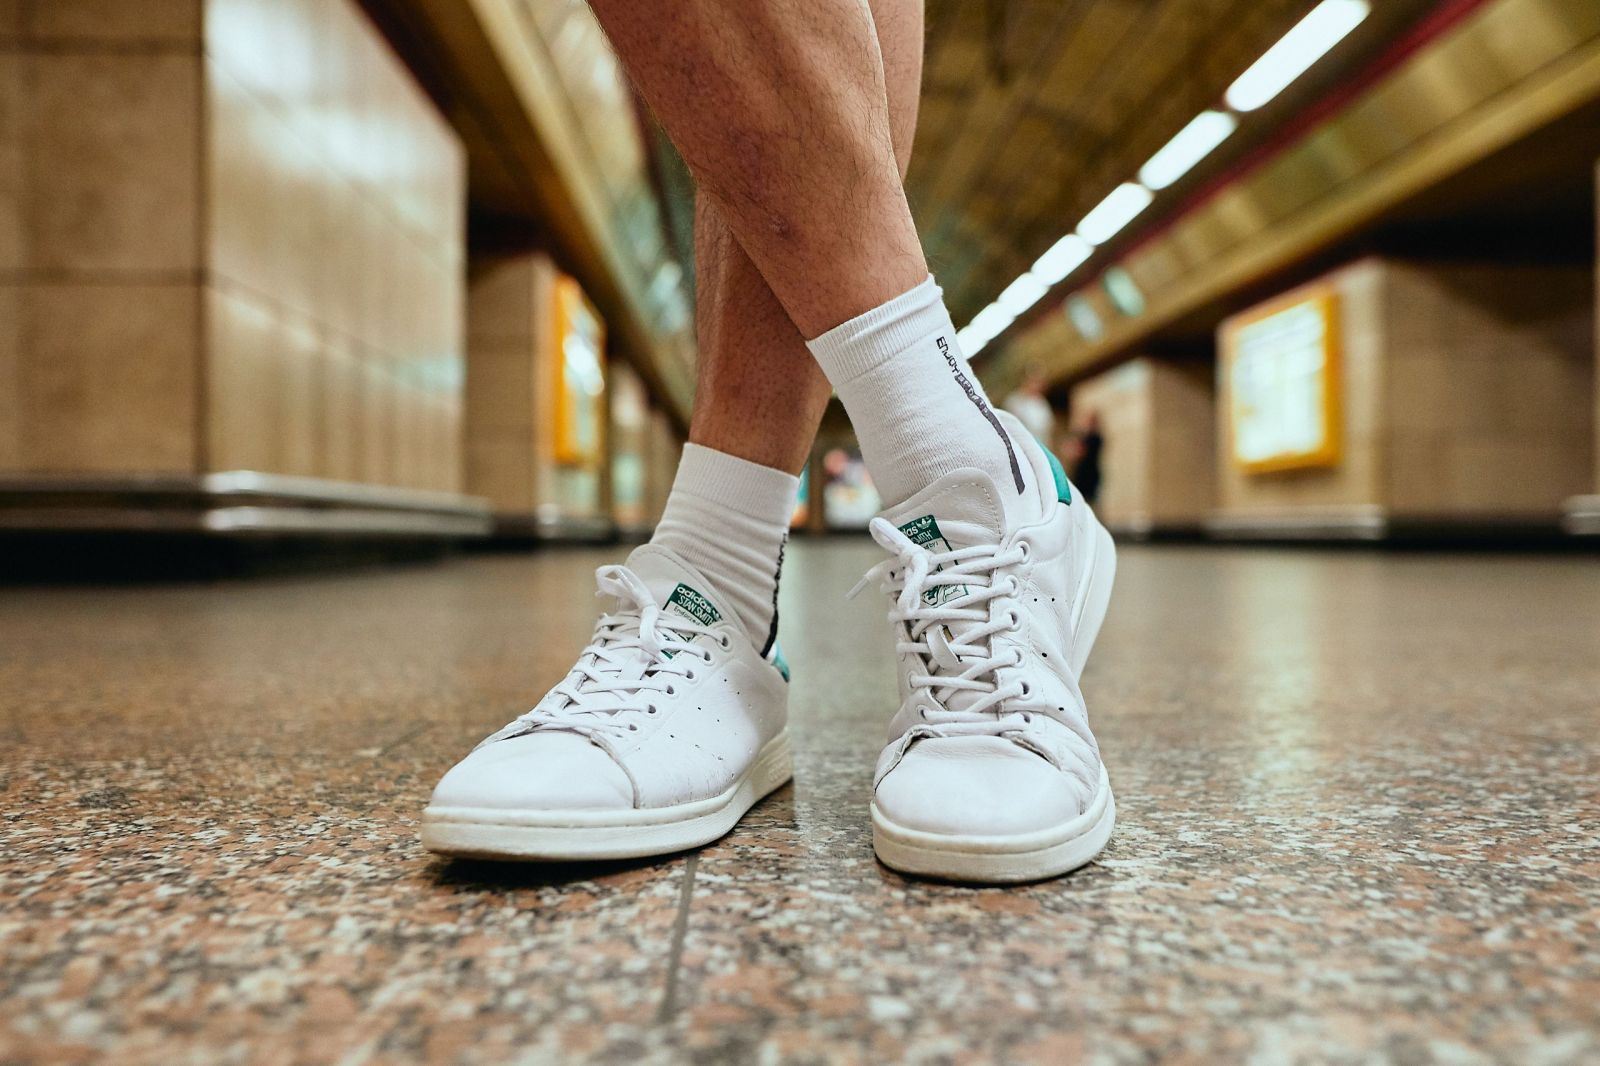 Móda z metra: Mladí Pražané mají v oblibě bílé tenisky. Jaké kreace s nimi vykouzlili?